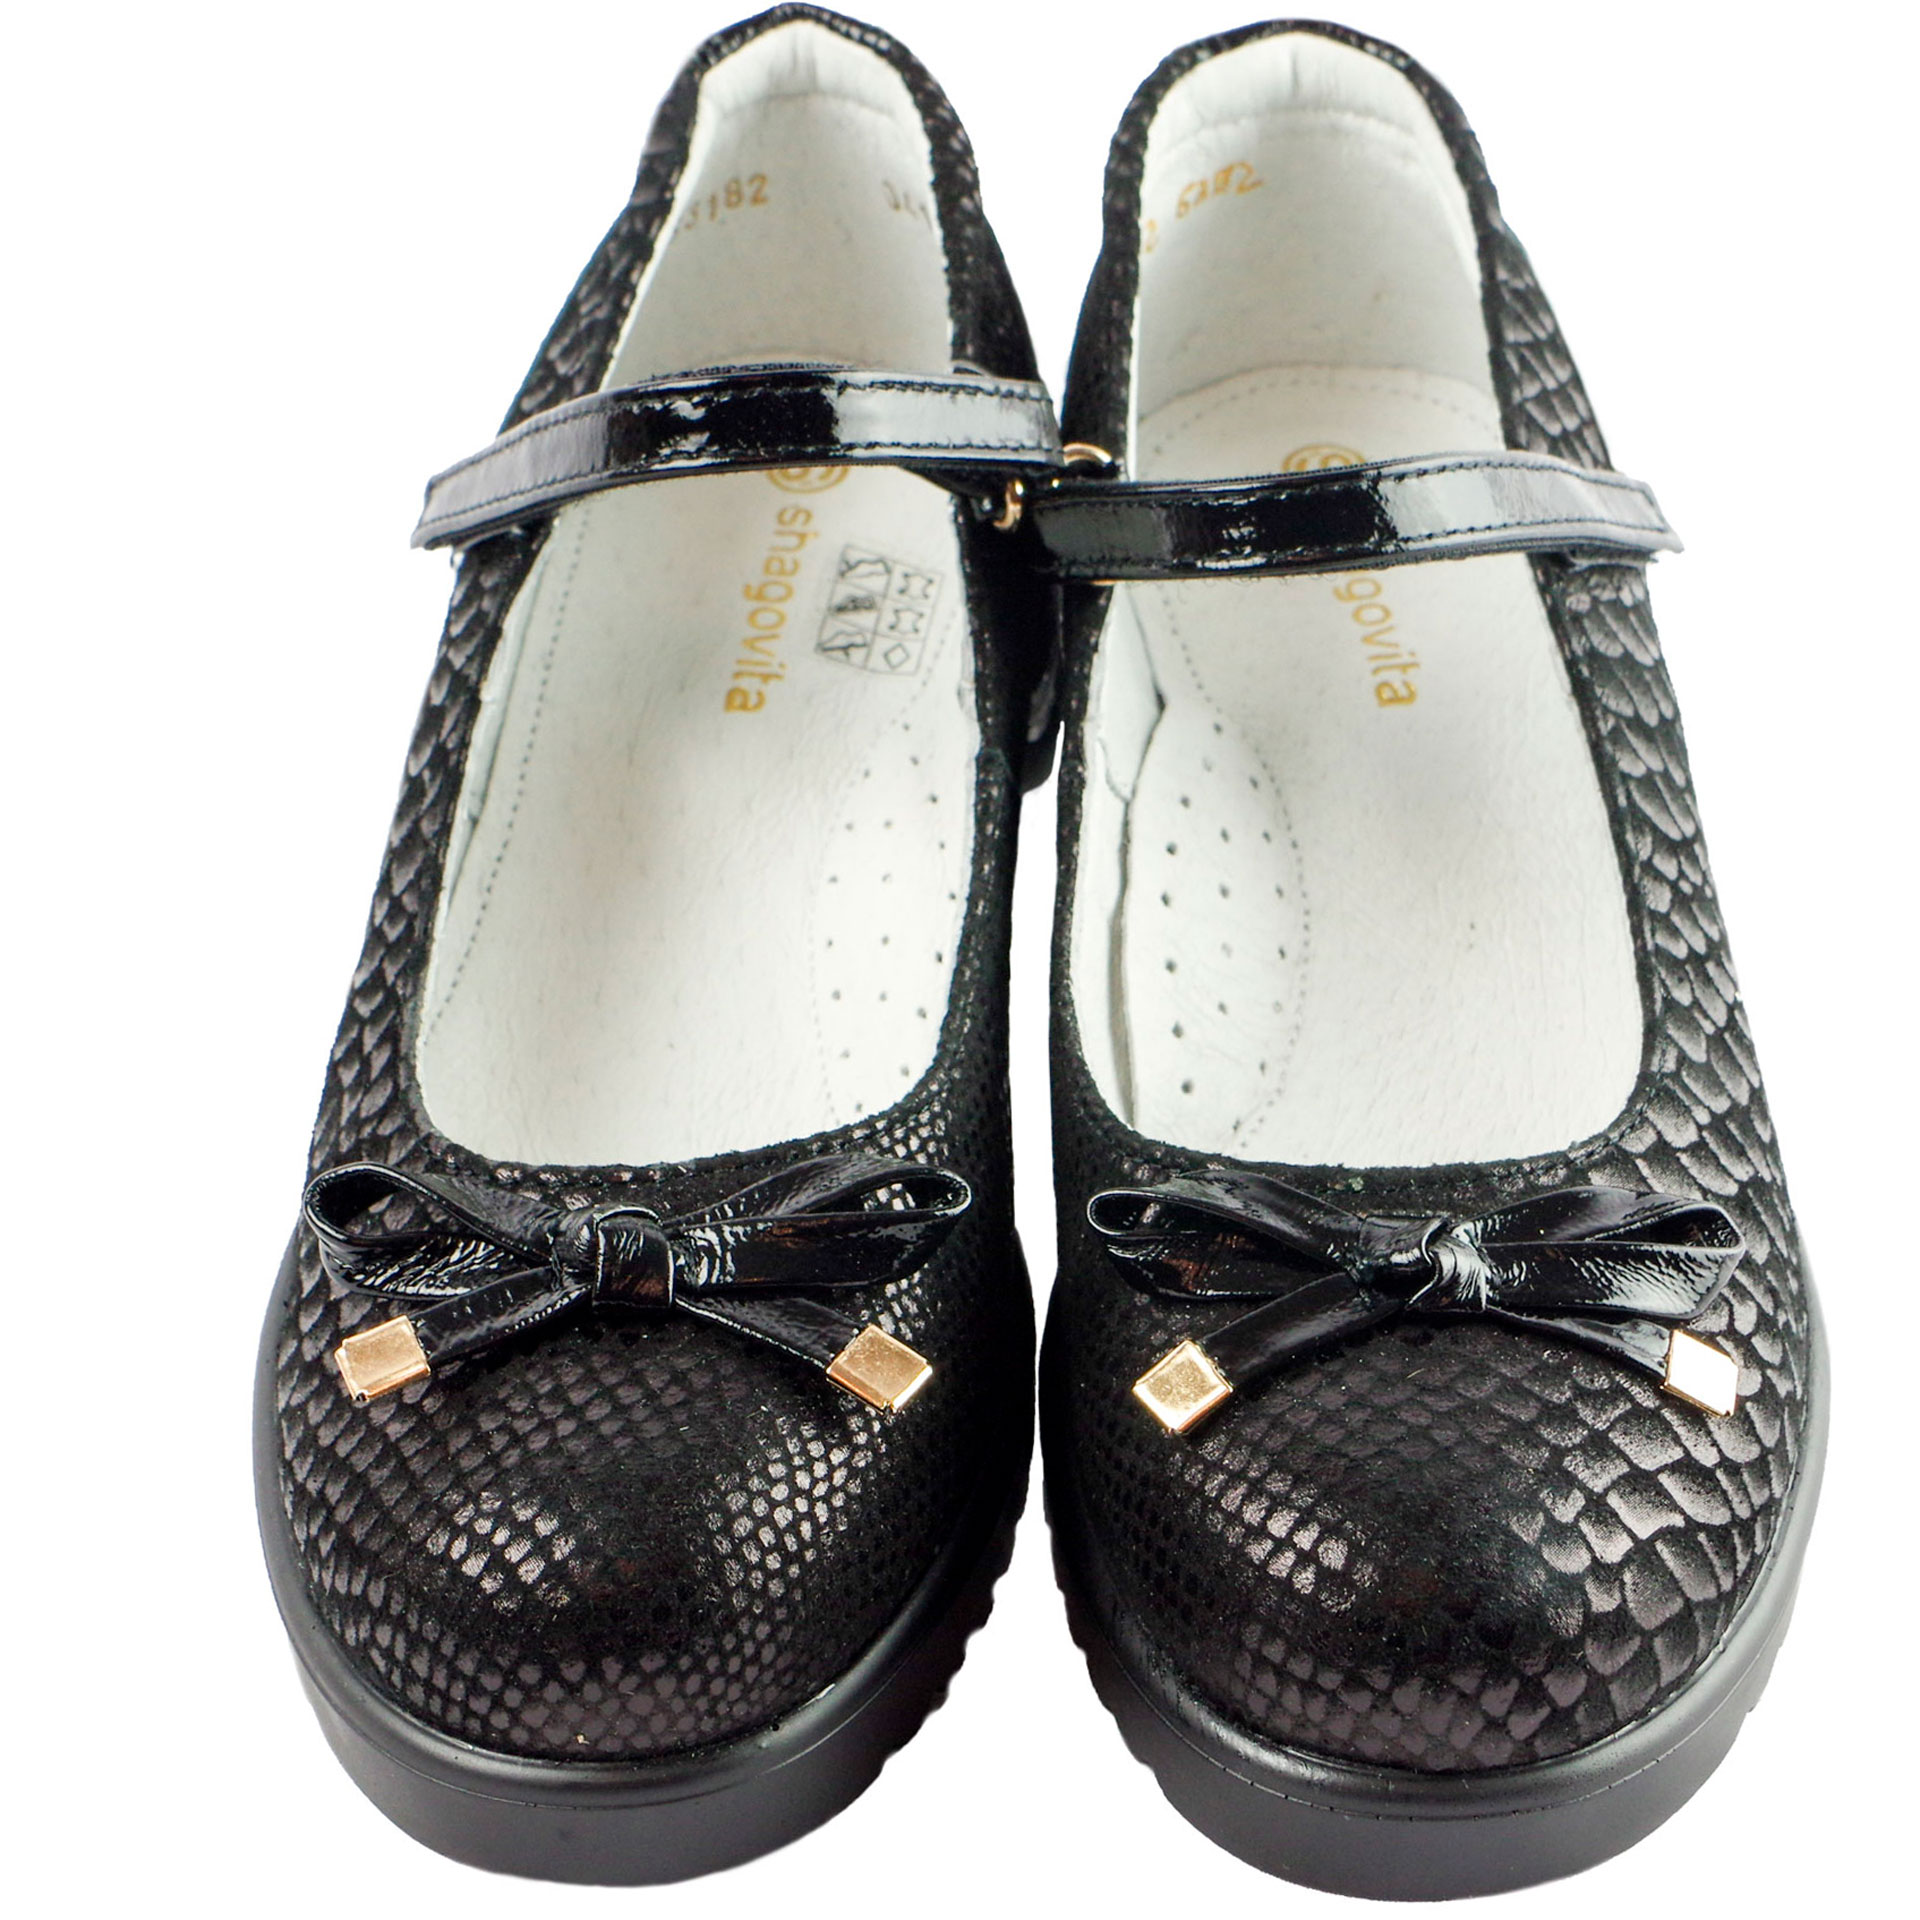 Шкільні туфлі для дівчинки (1572) для дівчинки, матеріал Натуральна шкіра, Чорний колір, 32-37 розміри – Sole Kids. Фото 3